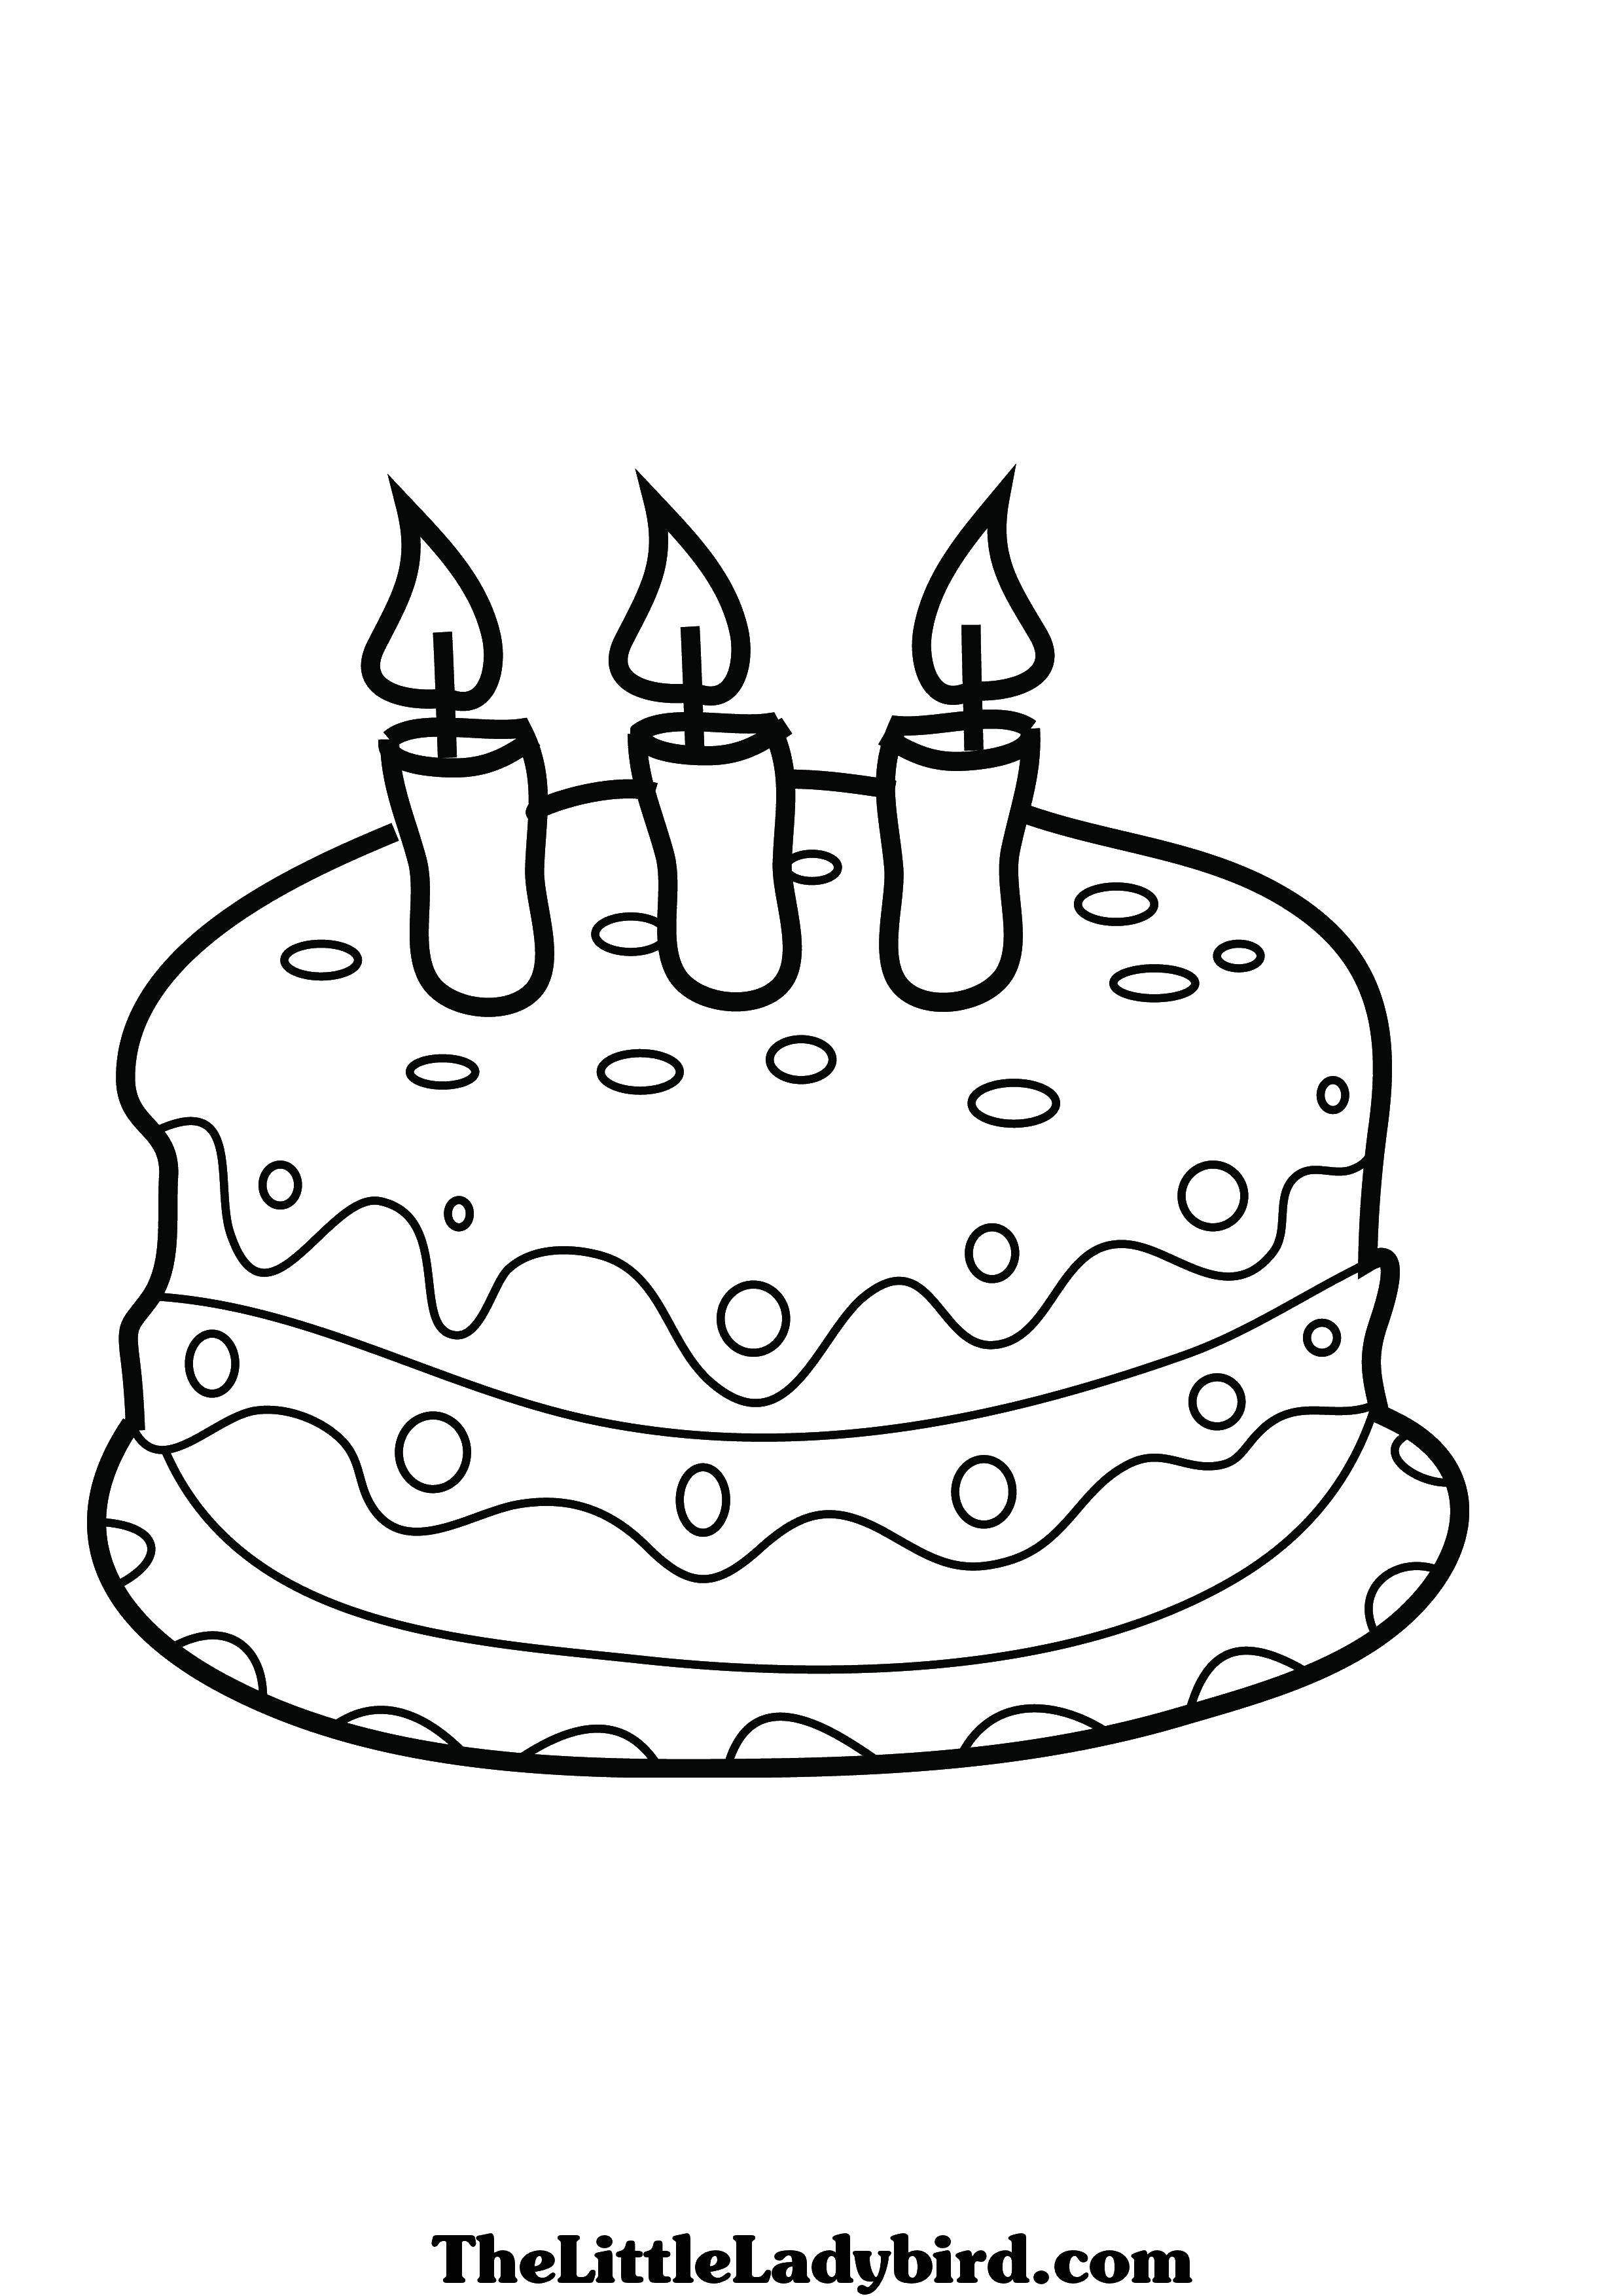 Название: Раскраска Три свечки. Категория: торты. Теги: Торт, еда, праздник.